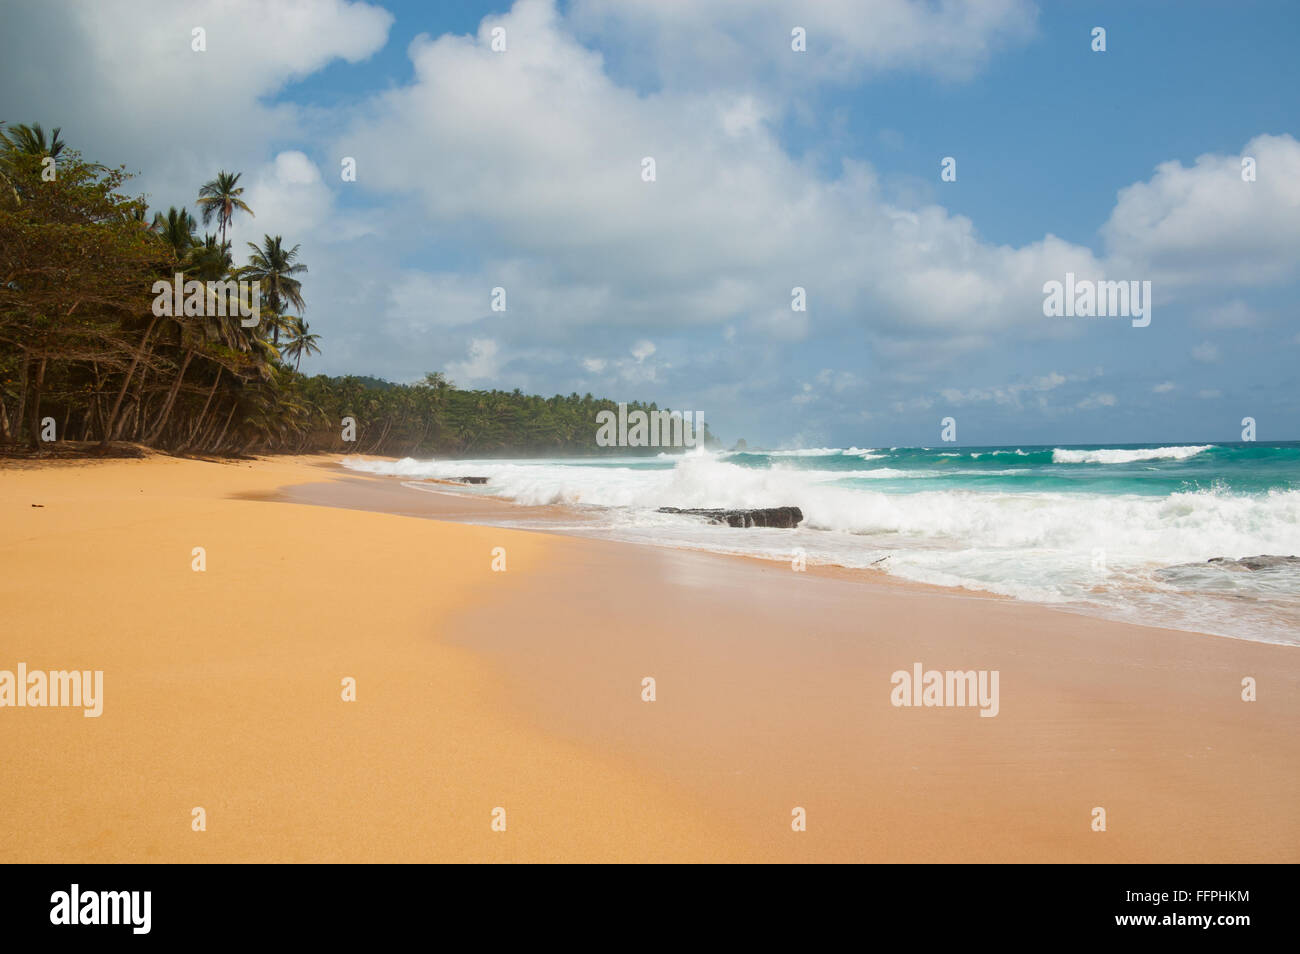 Plage tropicale avec palmiers et lourd. la mer Praia Jale, Sao Tomé-et-Principe. Banque D'Images